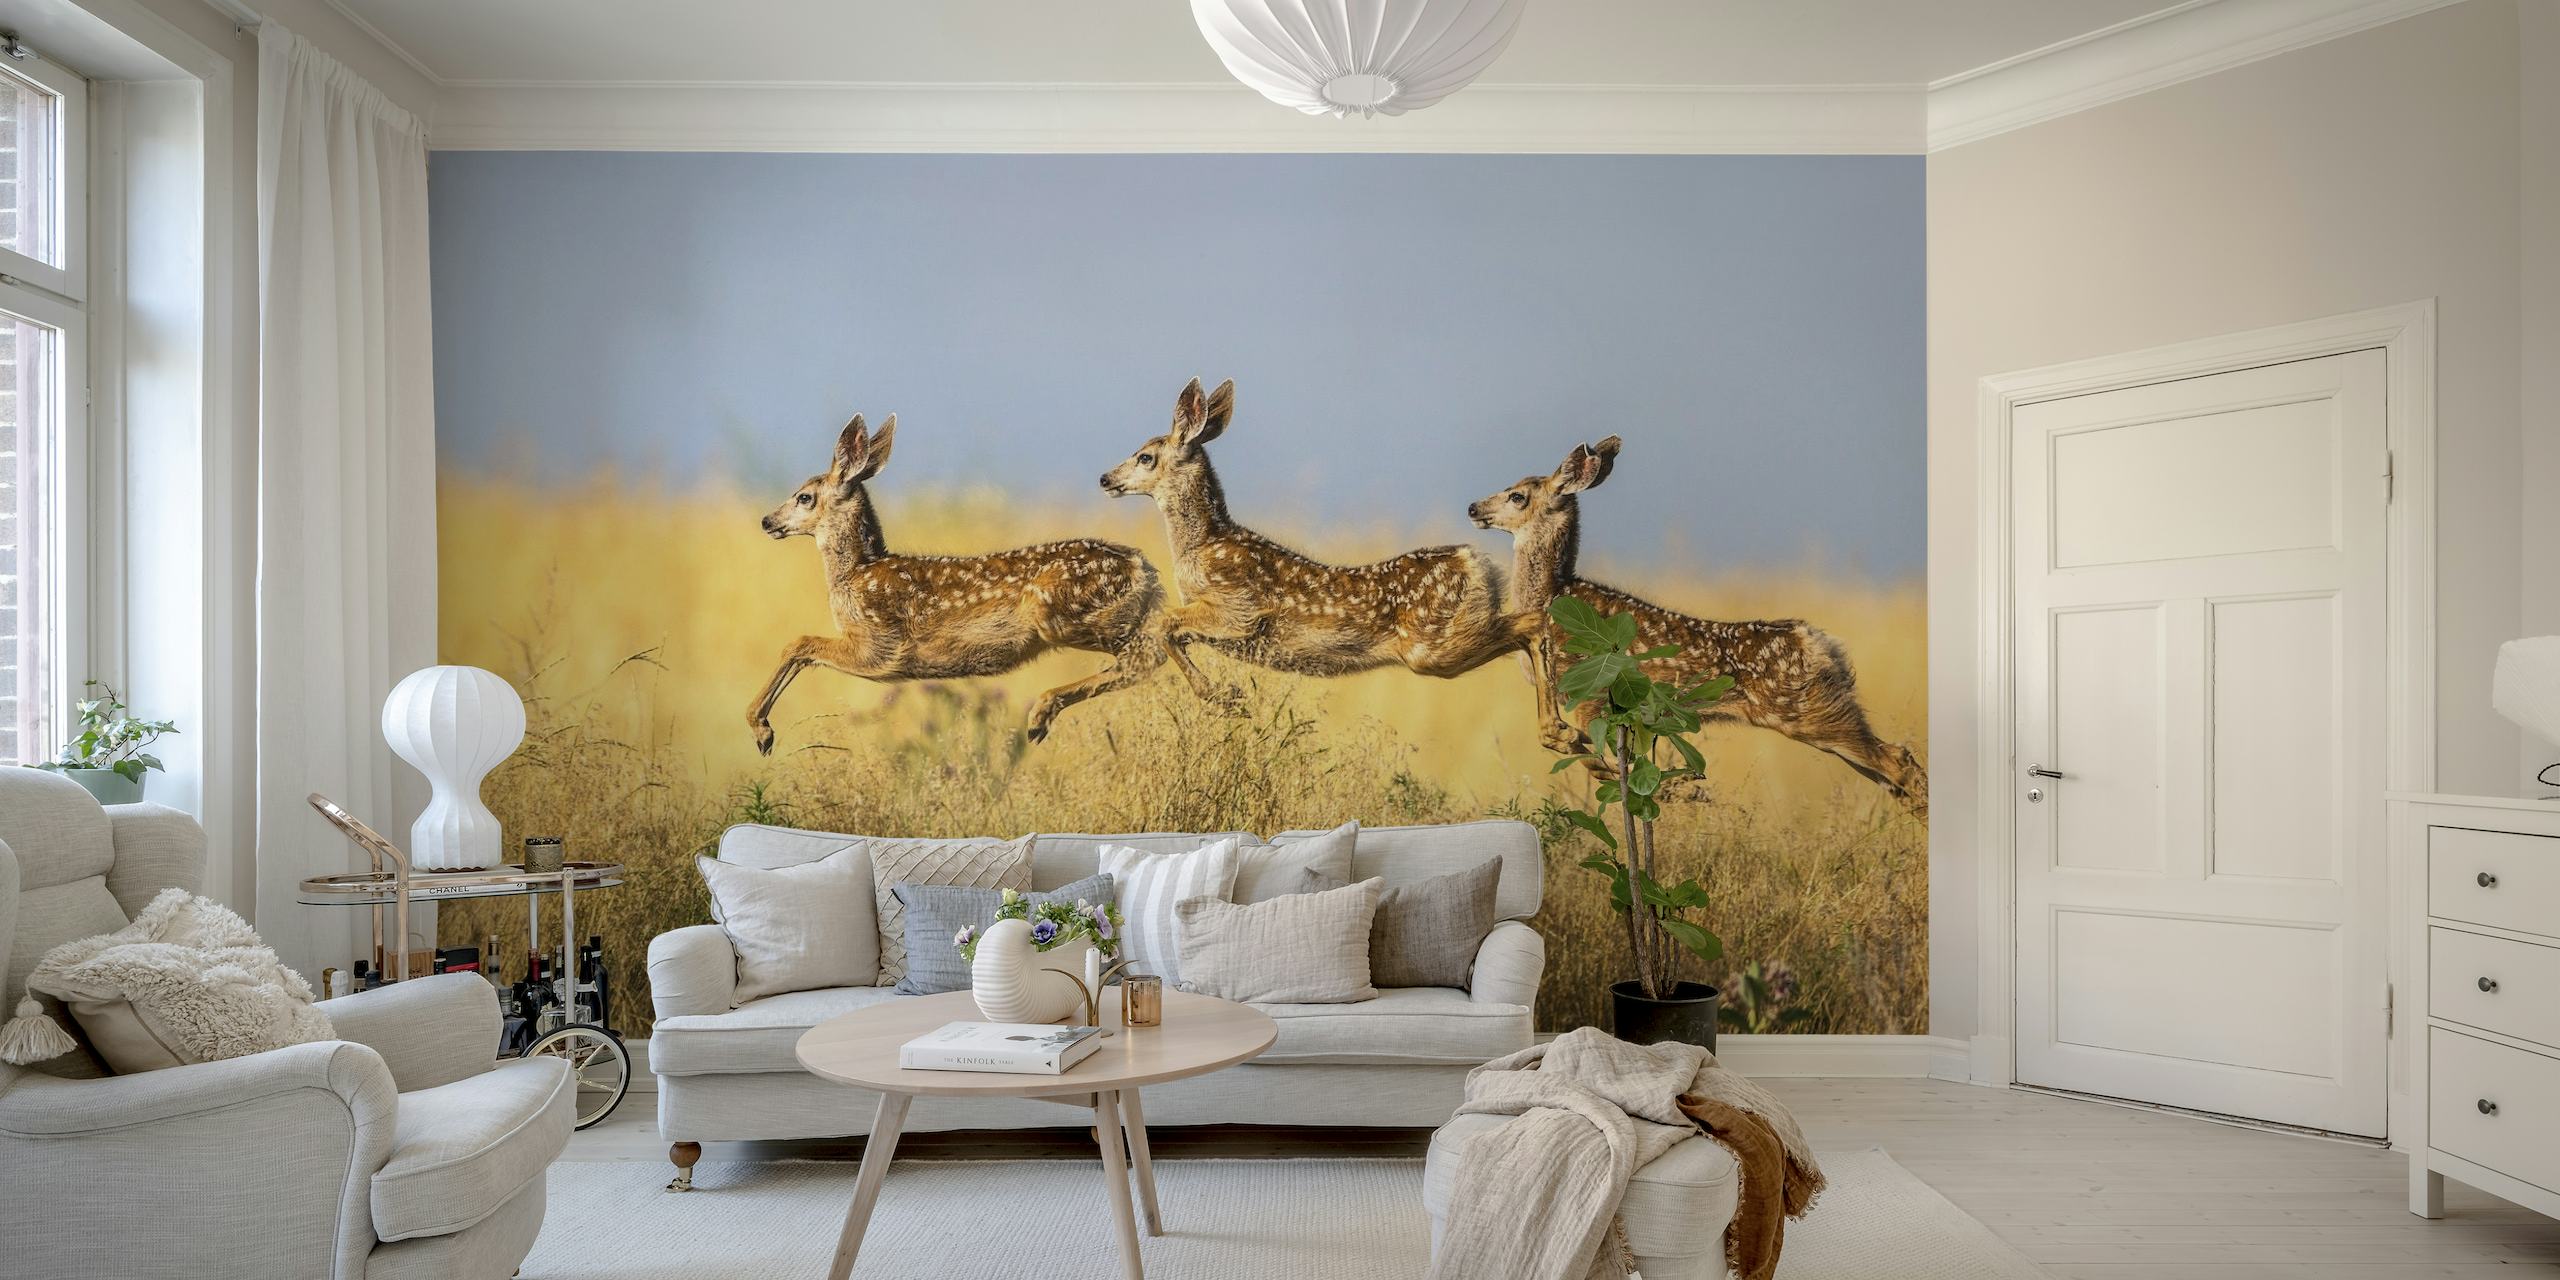 Tři zvířata skákající přes savanu v nástěnné malbě „Trojitý skok“.